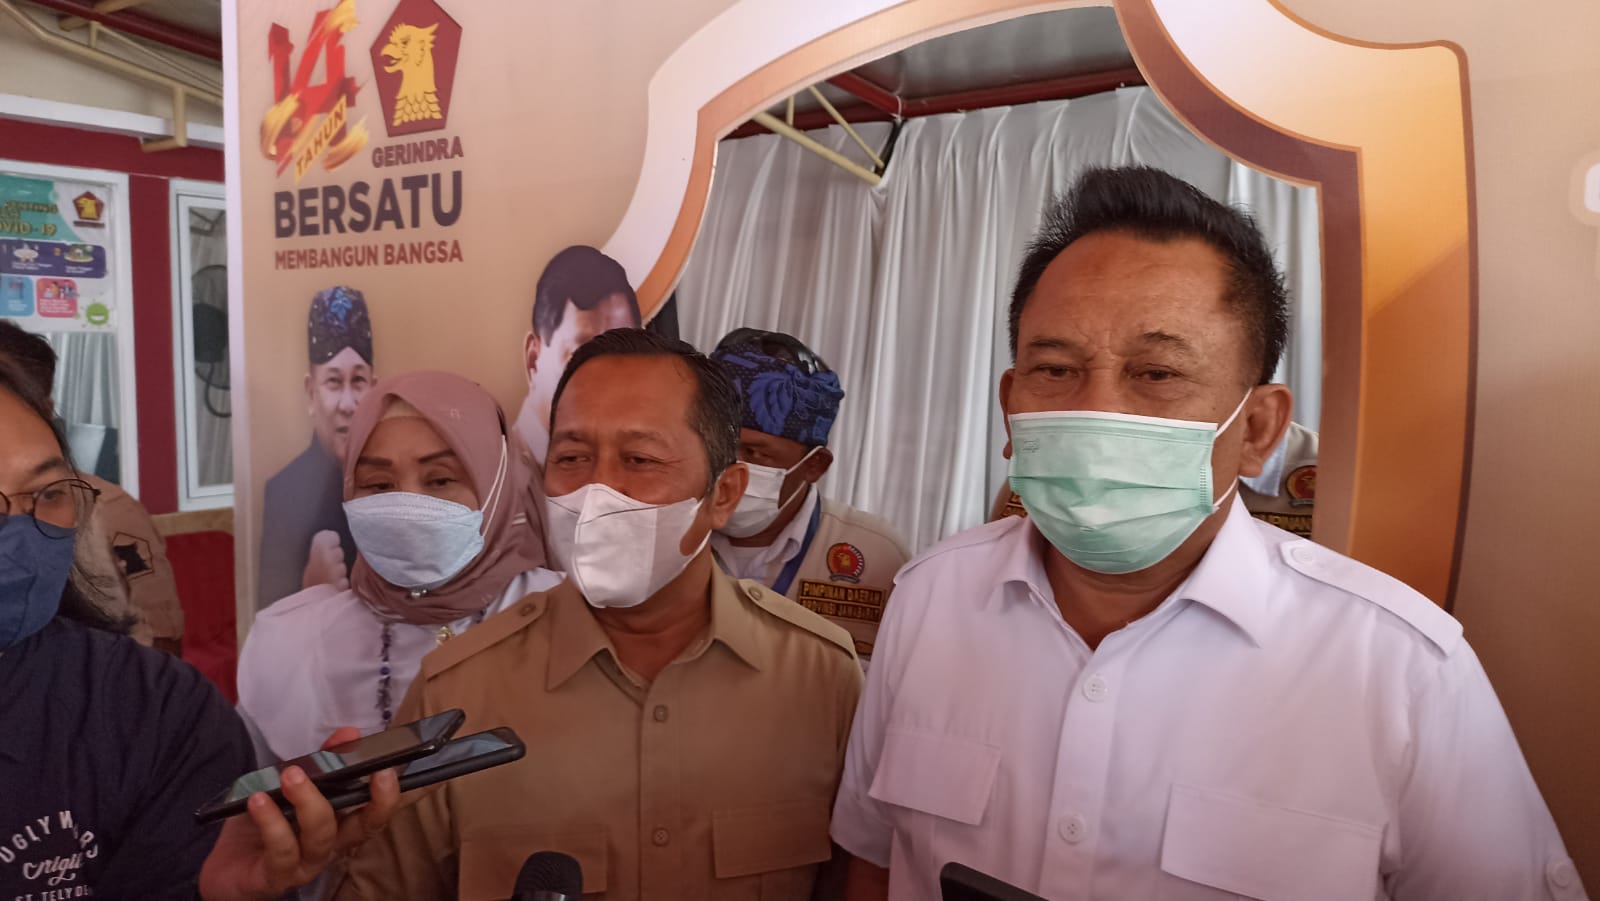 Dok. Ketua DPD Jabar Gerindra, Taufik Hidayat (Kanan) bersama Koordinator vaksinasi DPD Jabar Golkar, H. Arif Hamid Rahman (kiri), Selasa (1/2). Foto: Sandi Nugraha.